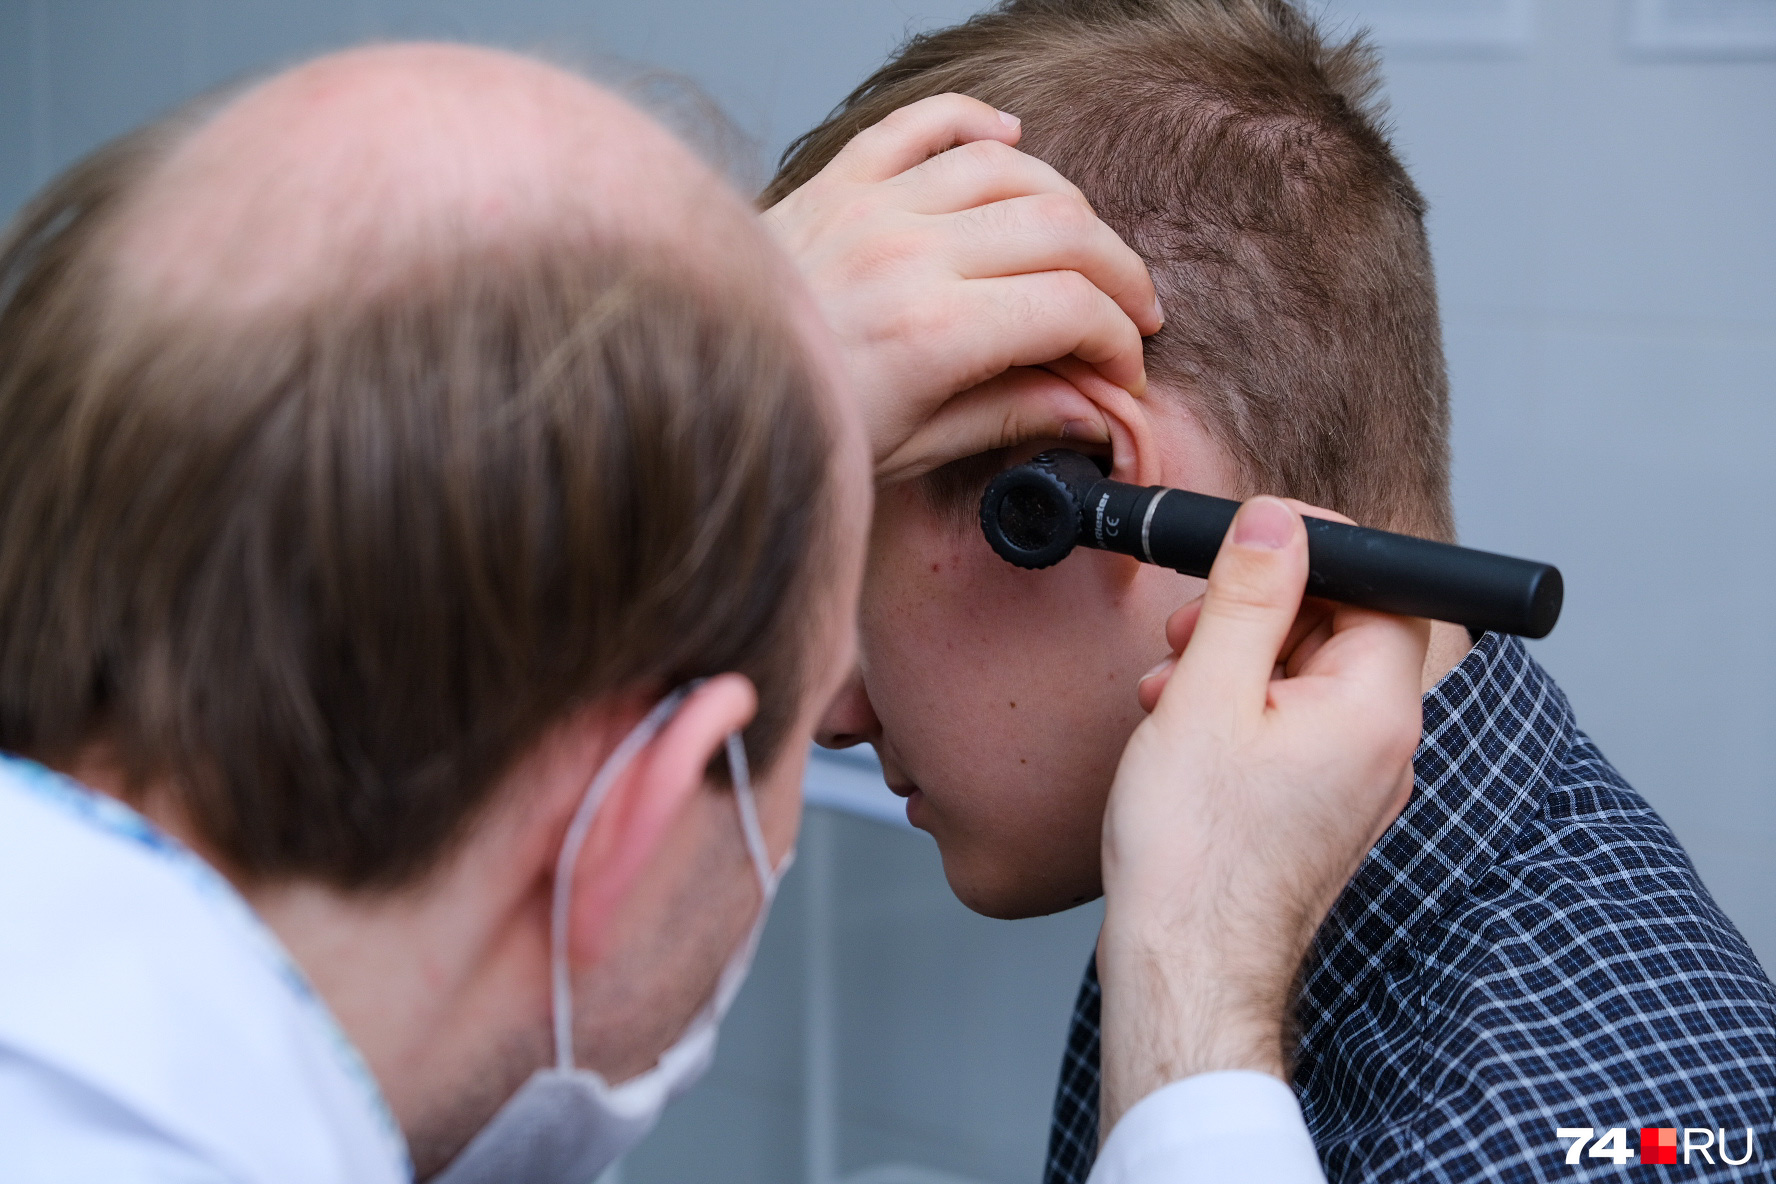 Длительное время причина появления шума в ушах была загадкой для экспертов и врачей